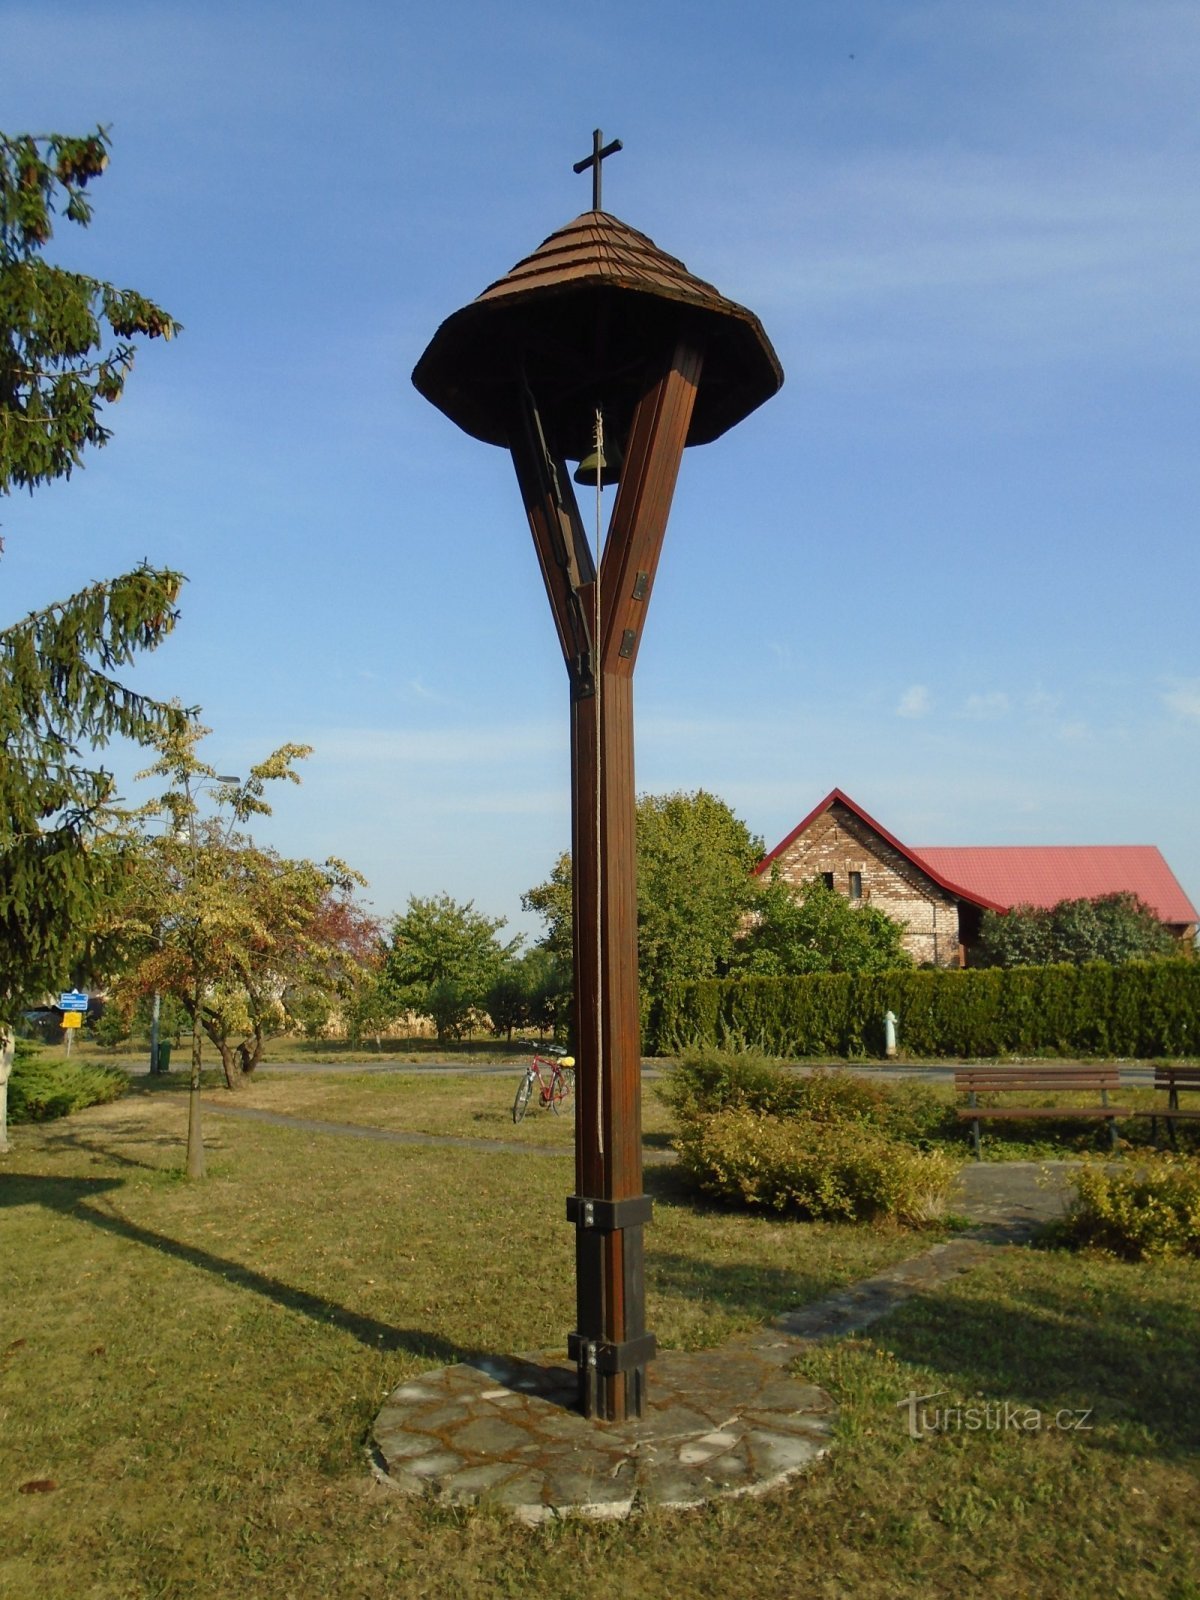 Tháp chuông (Radíkovice)